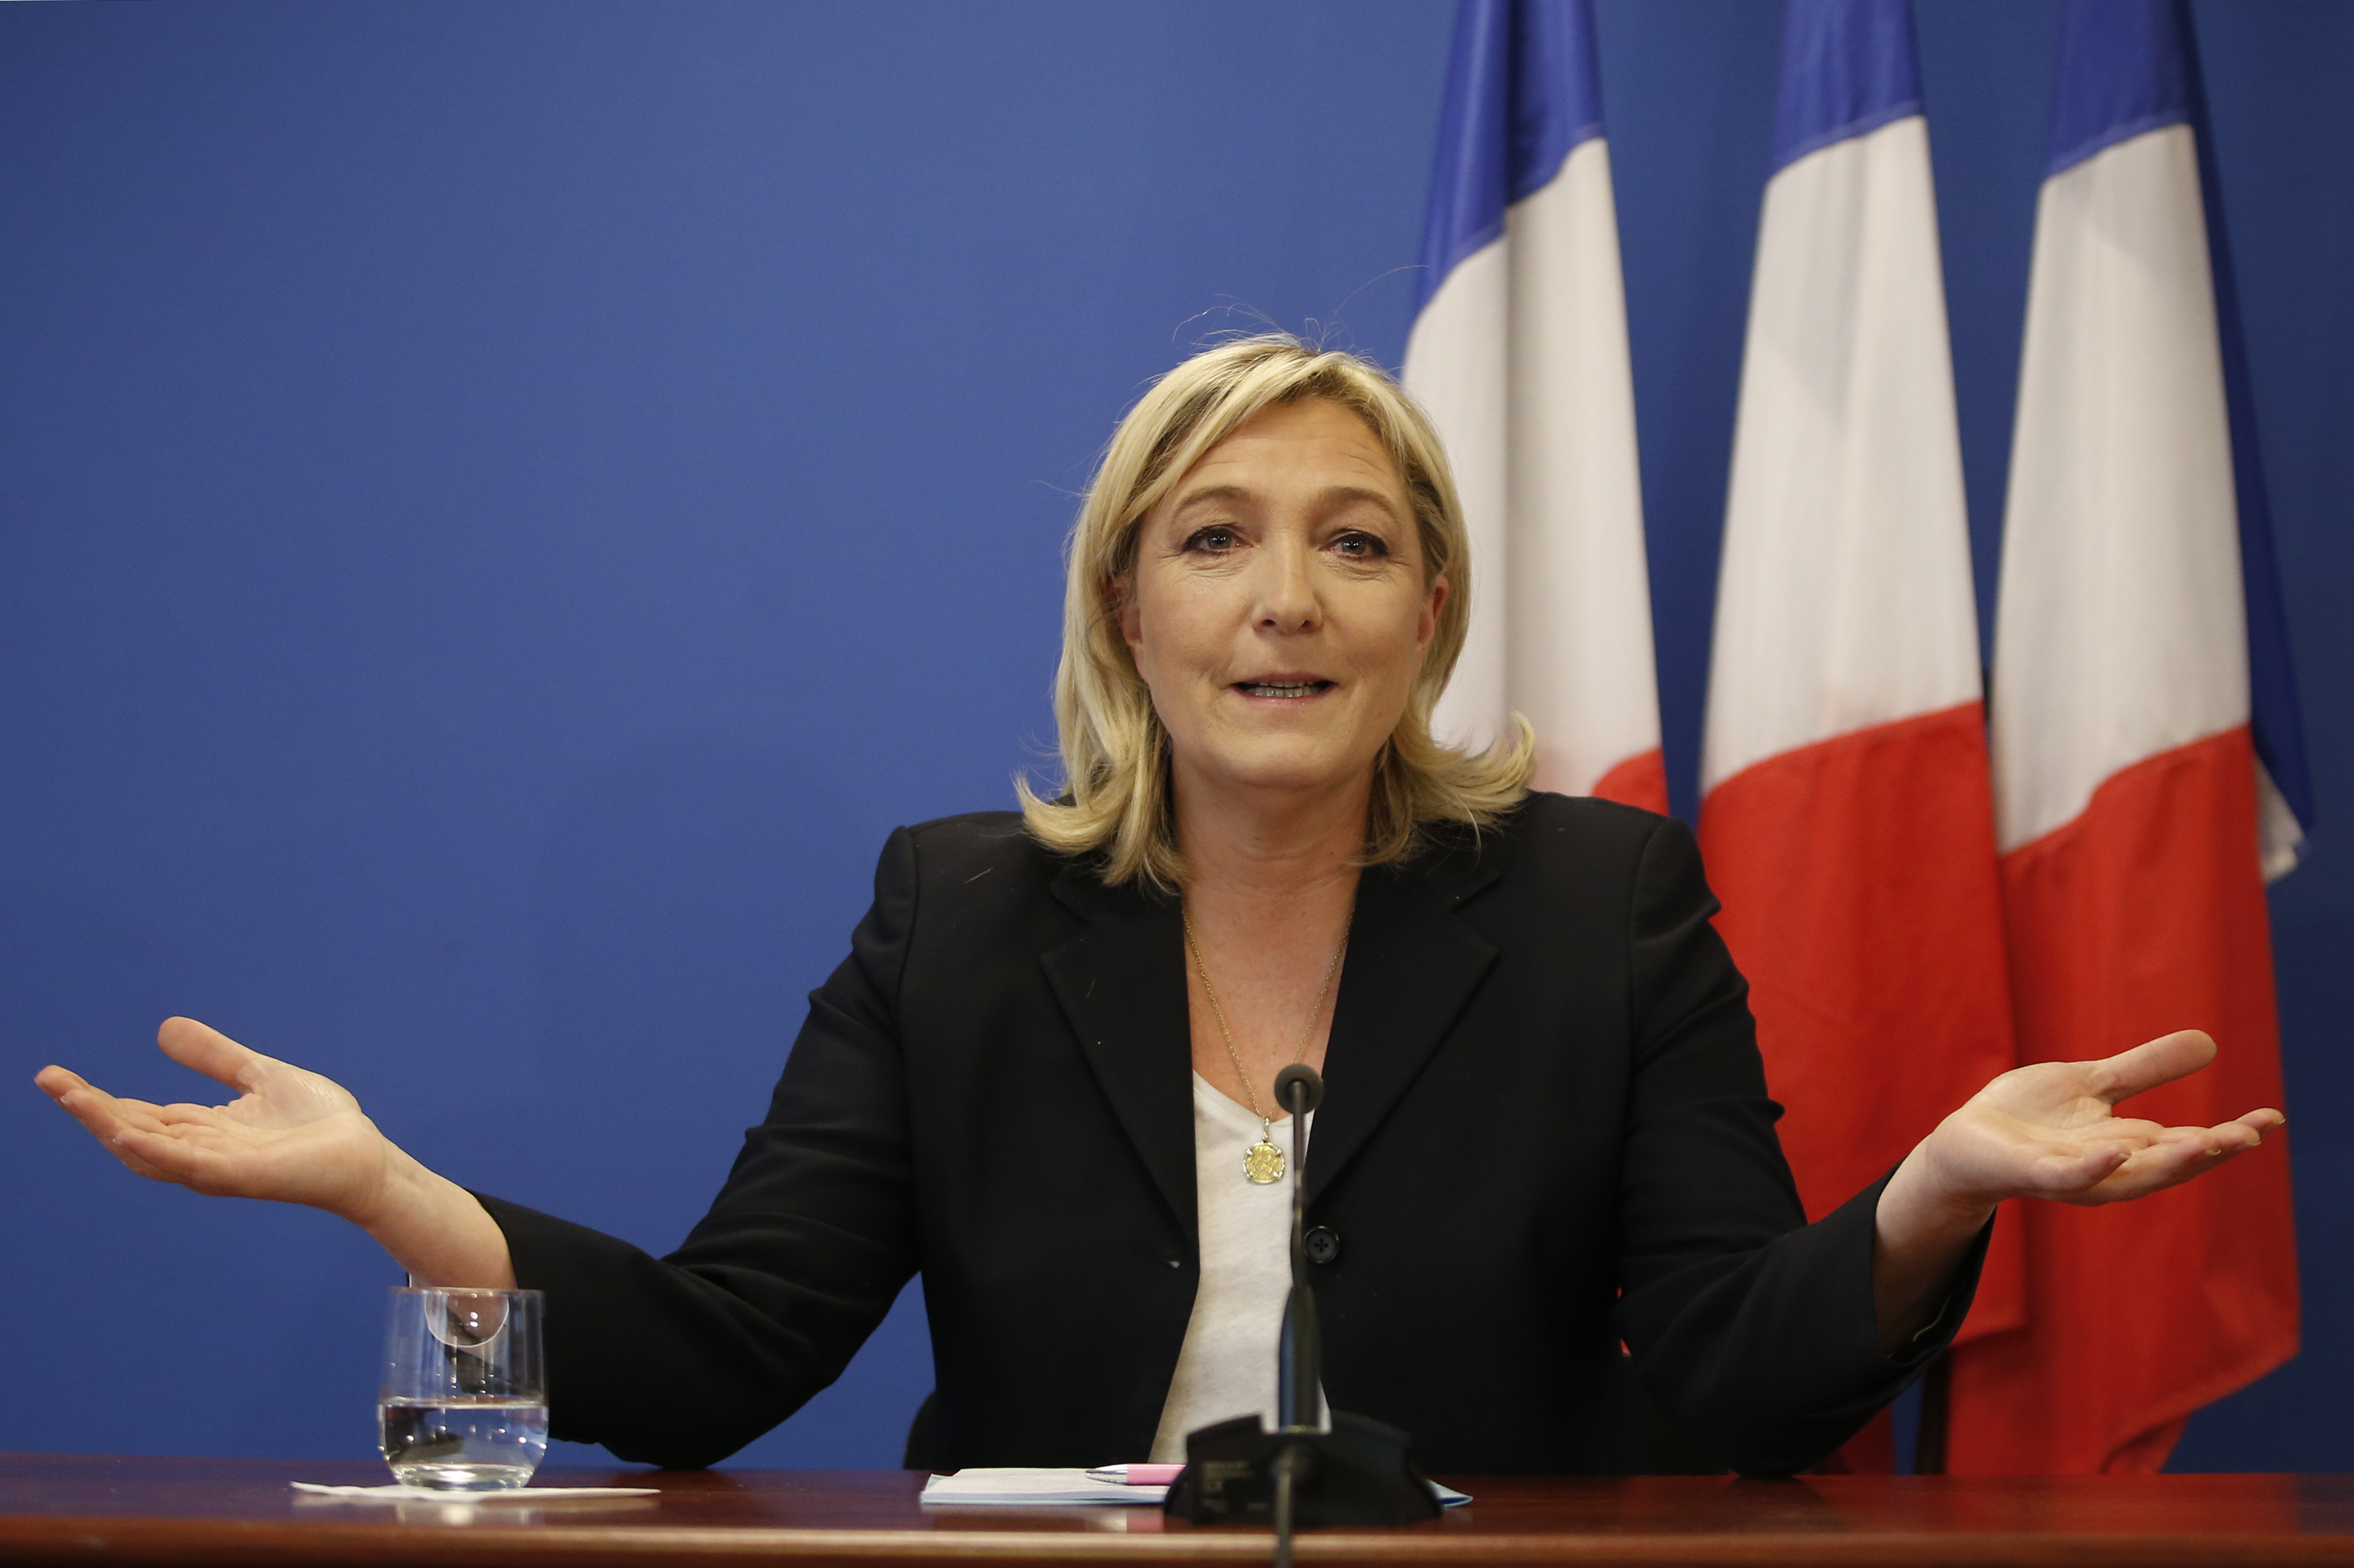 Партия Марин Ле Пен «Национальное объединение» лидирует в первом туре парламентских выборов во Франции 